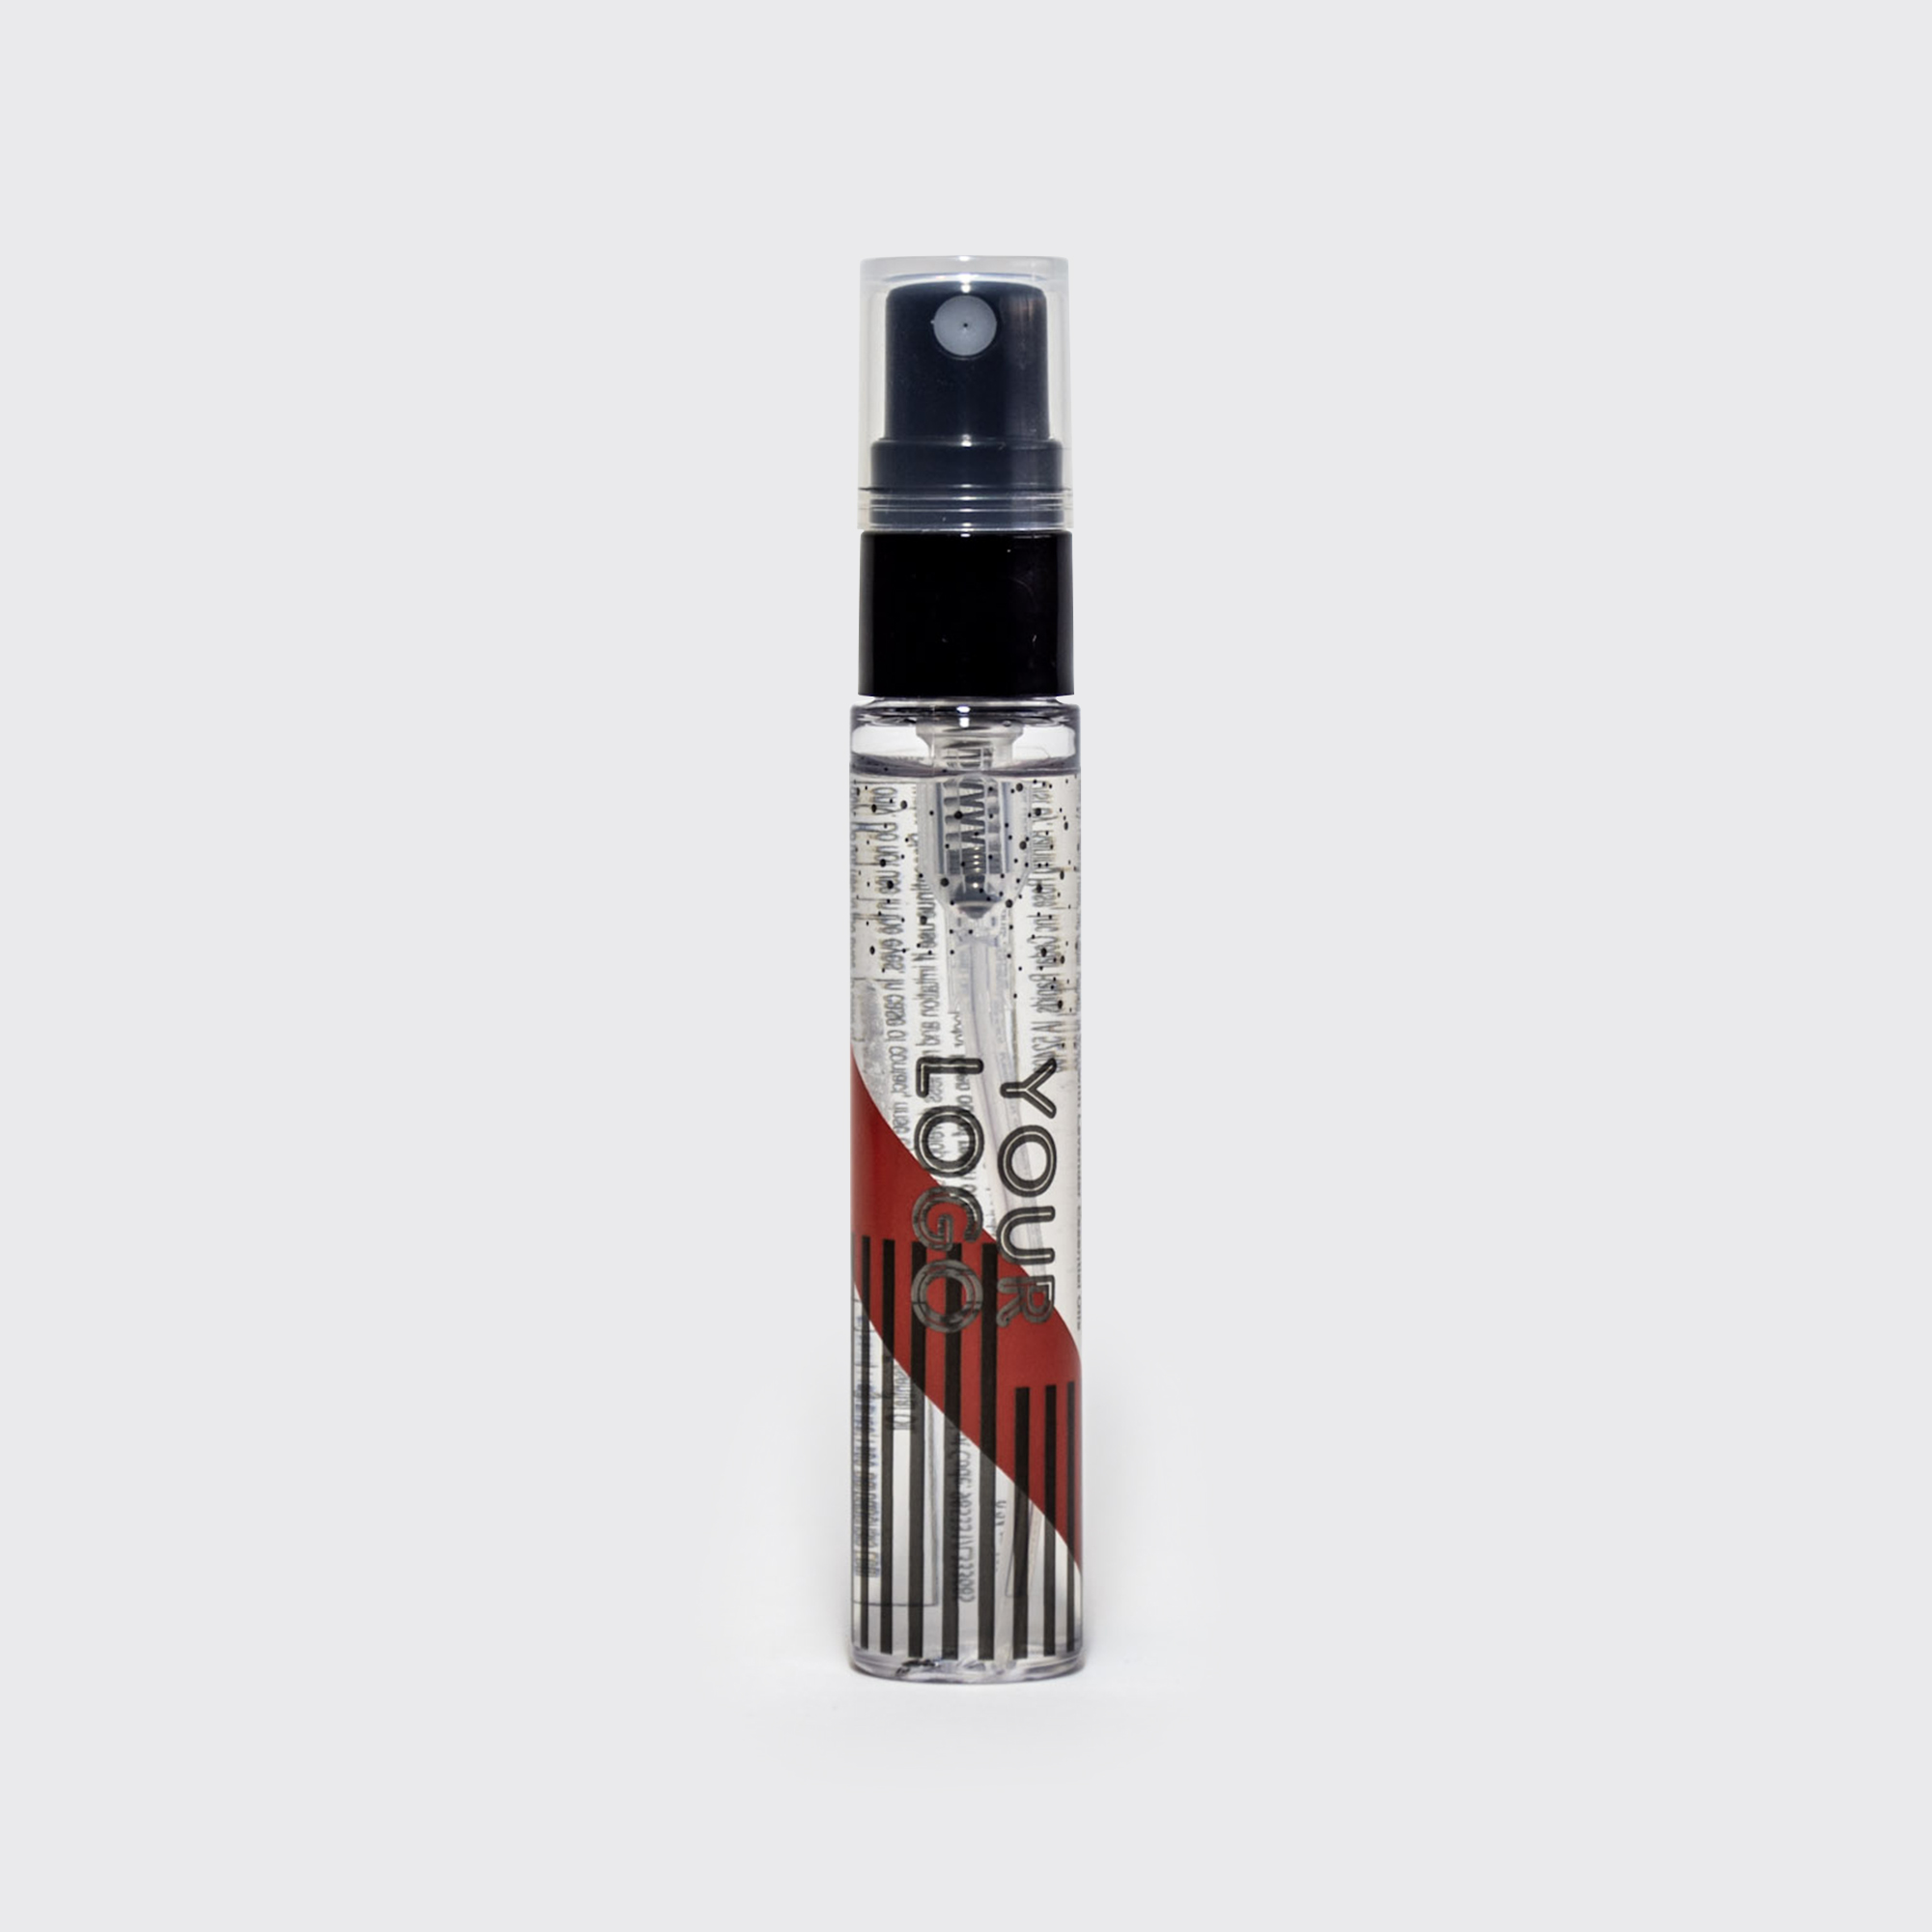 ON SALE! Hand Sanitizer Essential Oil Spray Pen 0.34 fl oz